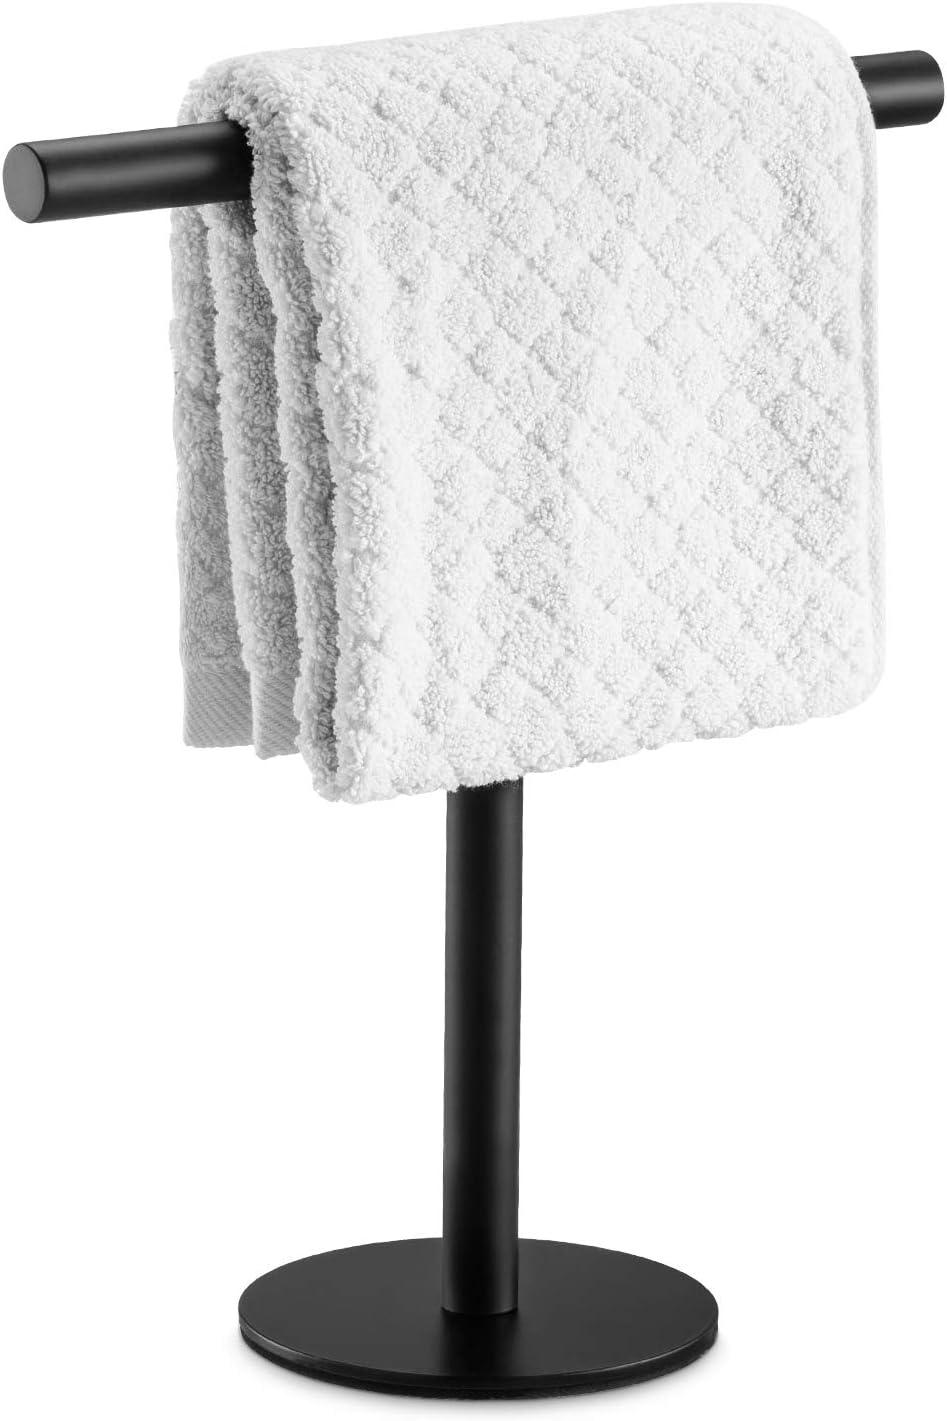 Soporte para toallas de mano de baño de acero inoxidable SUS304 color -  VIRTUAL MUEBLES